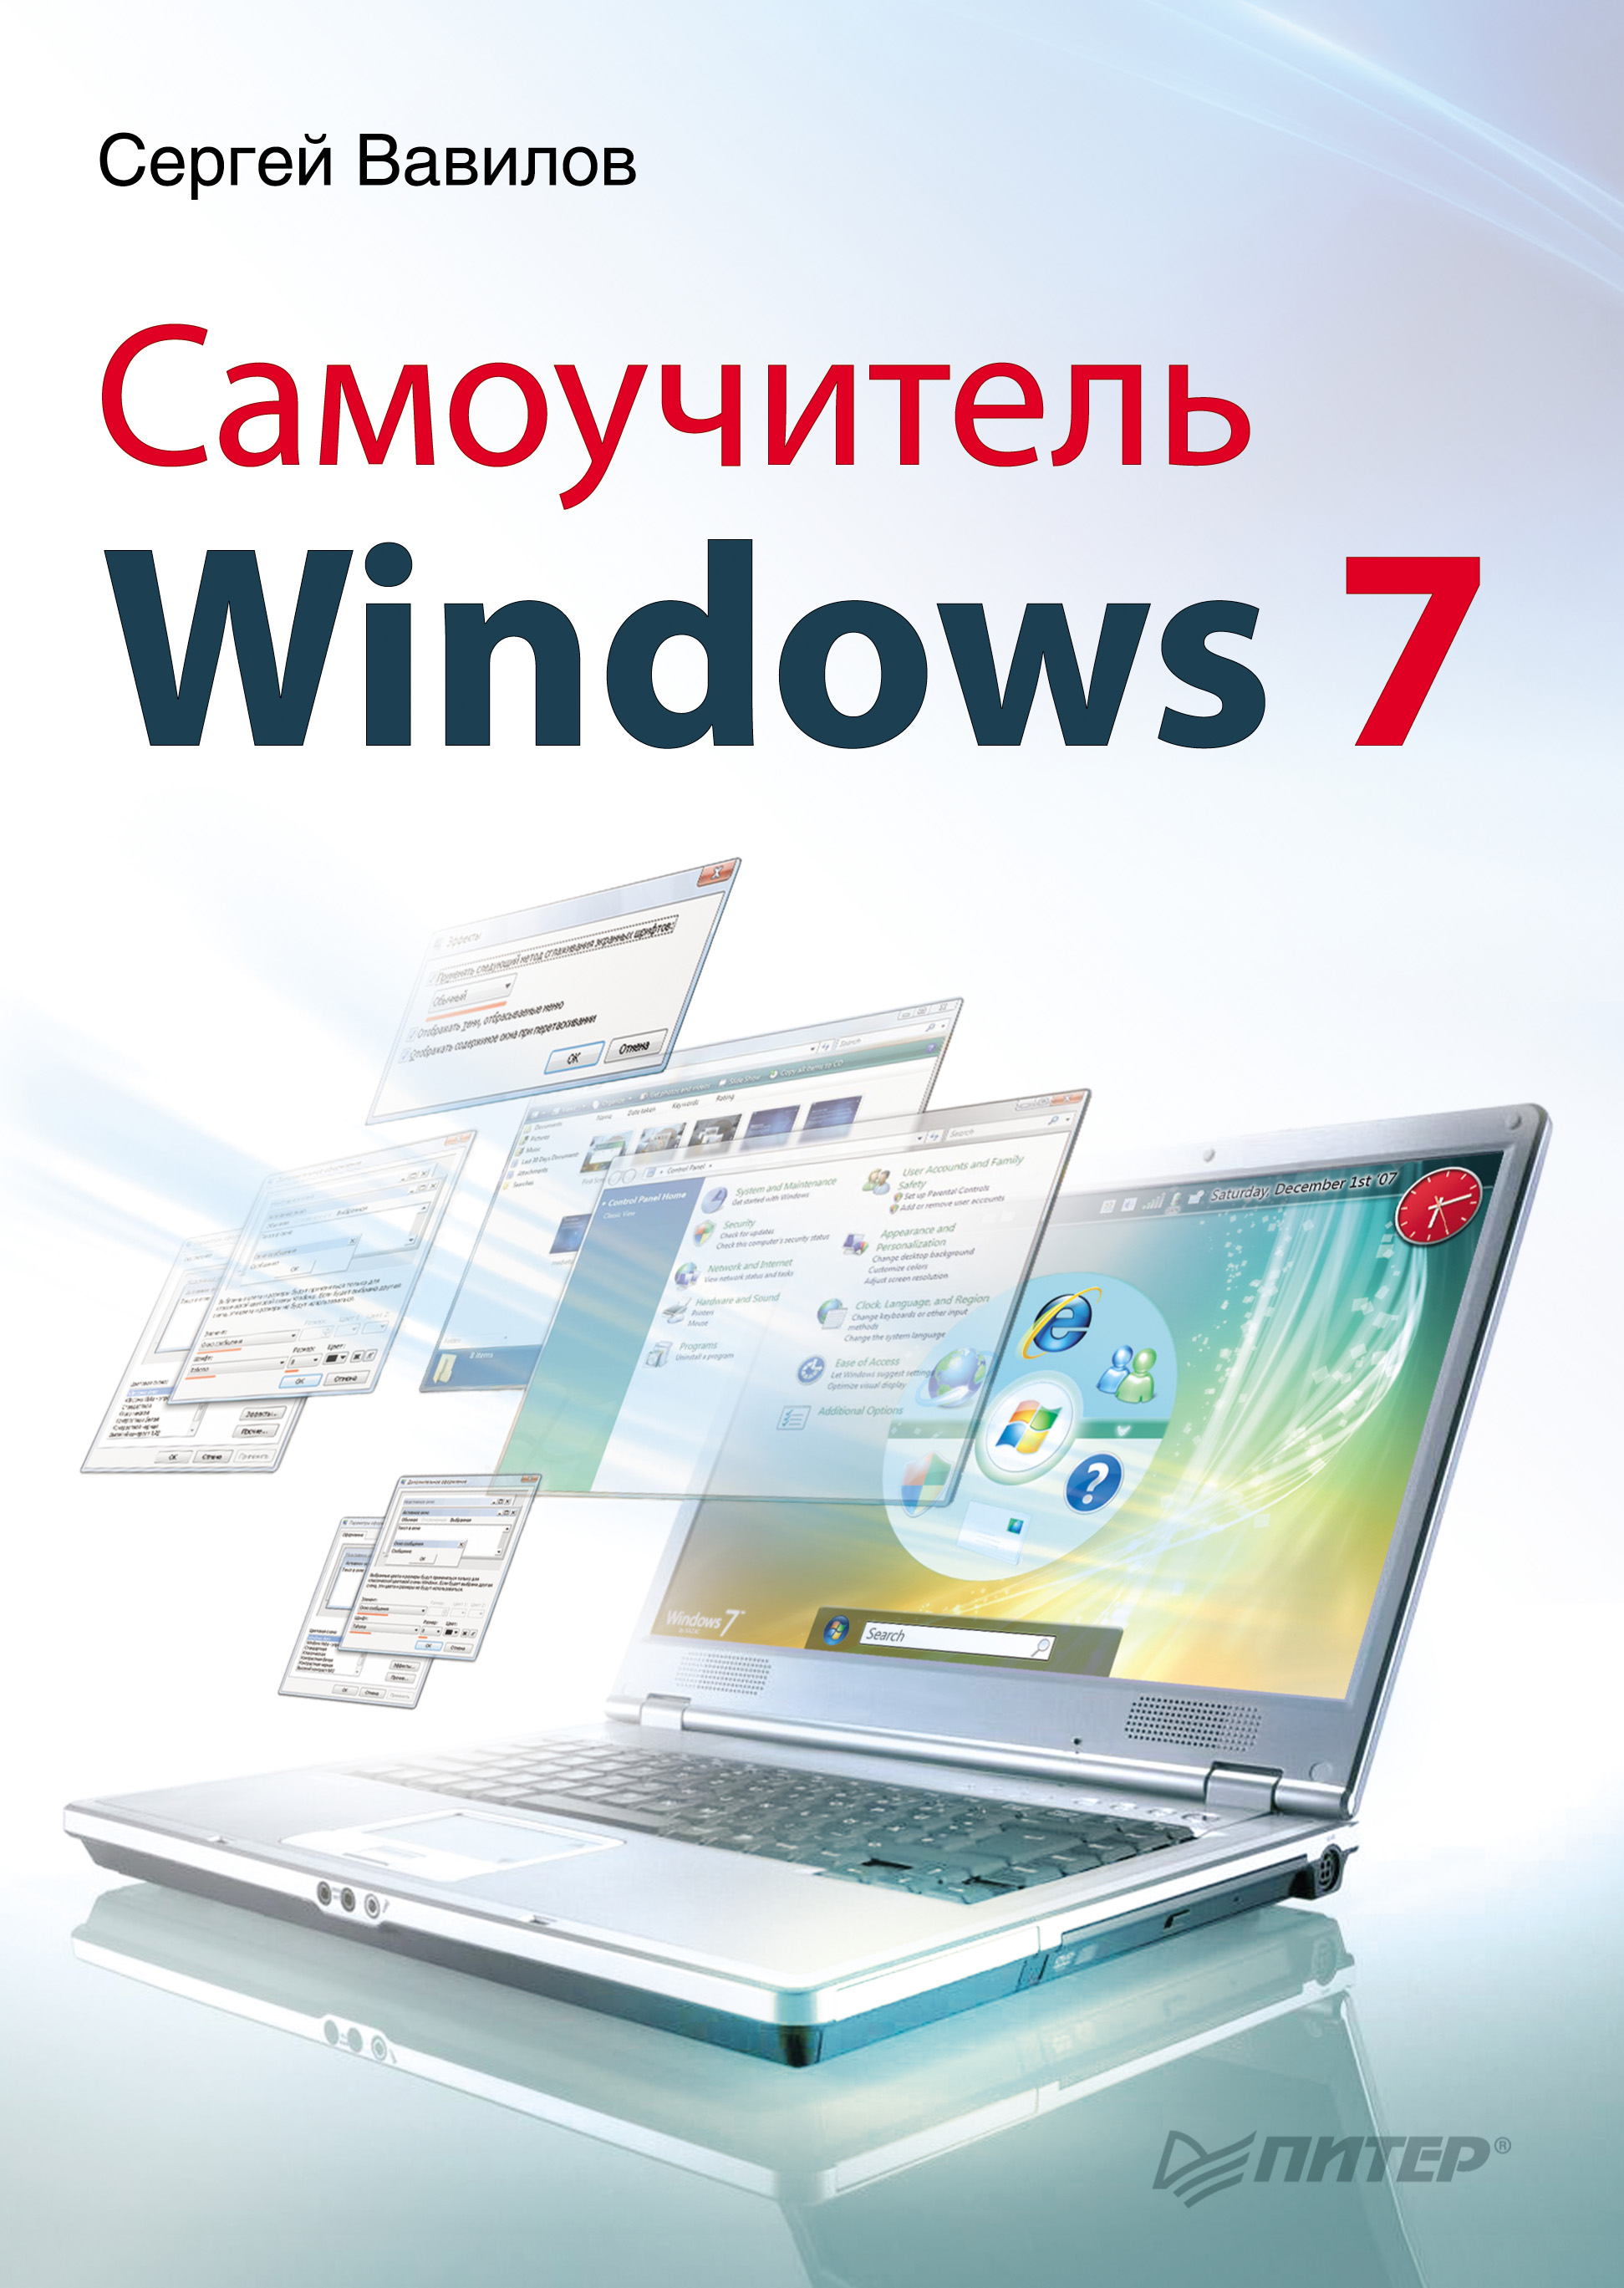 Книга  Самоучитель Windows 7 созданная Сергей Вавилов может относится к жанру ОС и сети. Стоимость электронной книги Самоучитель Windows 7 с идентификатором 585625 составляет 59.00 руб.